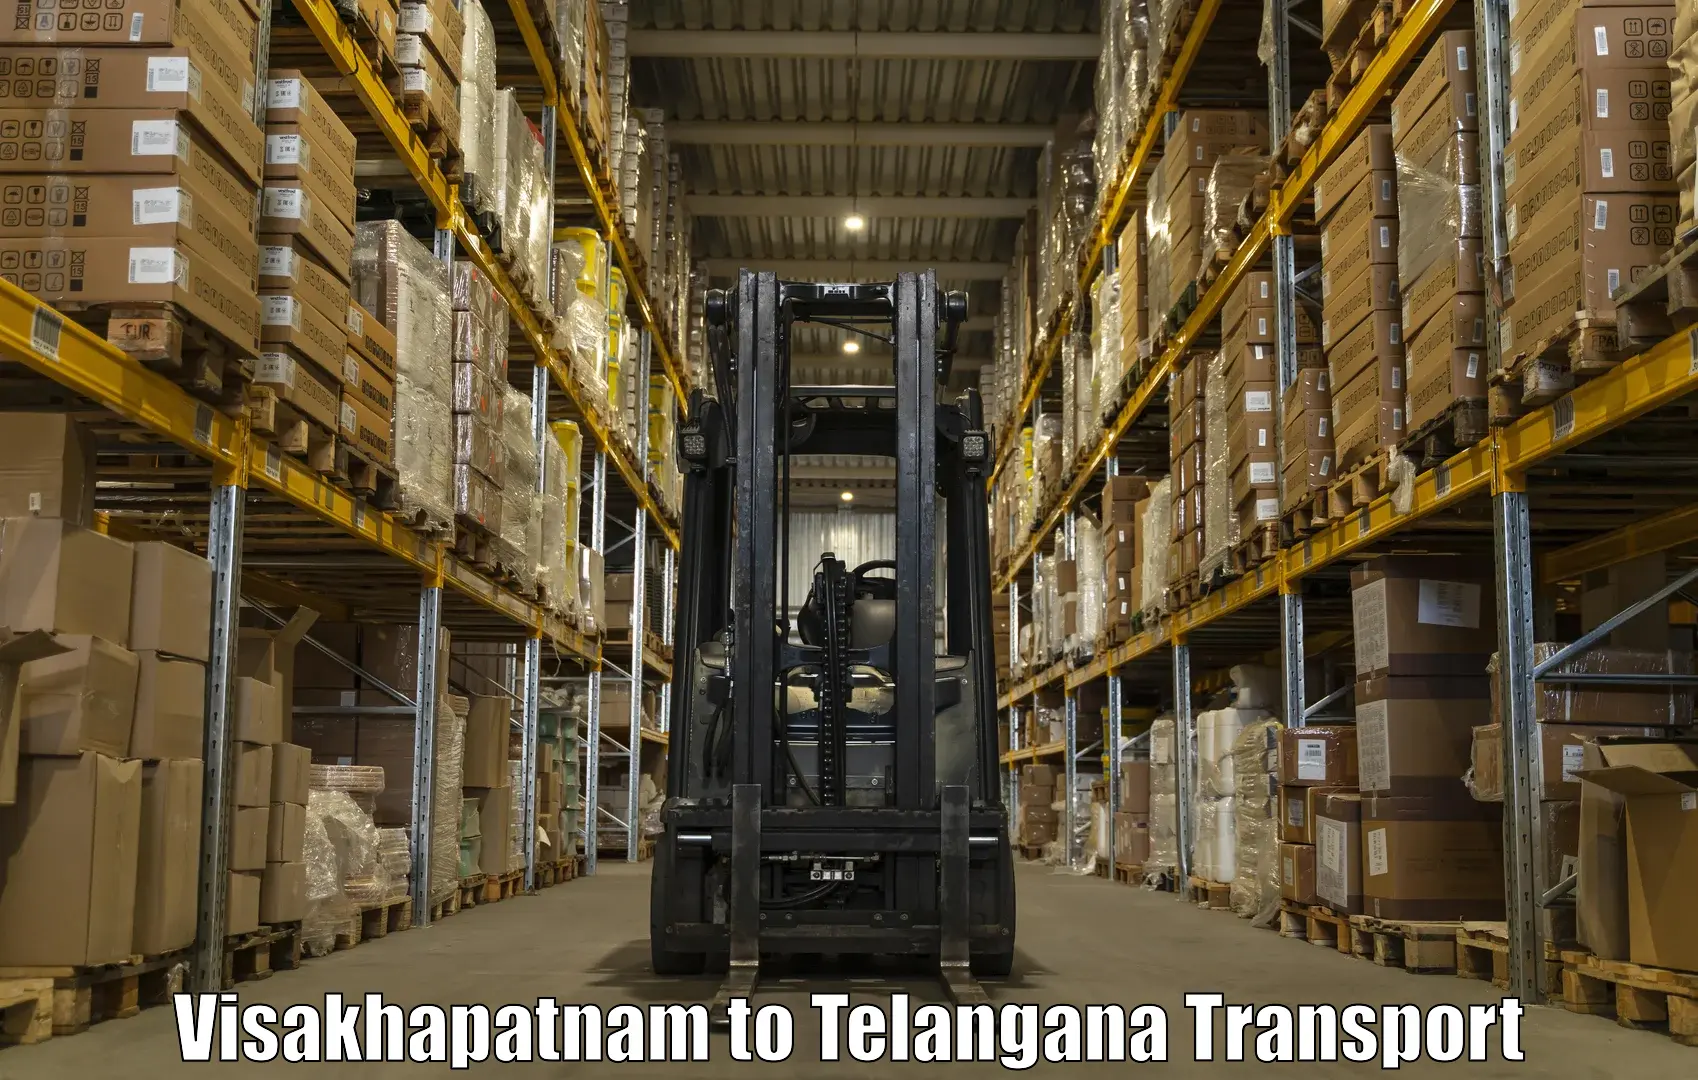 Daily transport service Visakhapatnam to Khanapur Nirmal